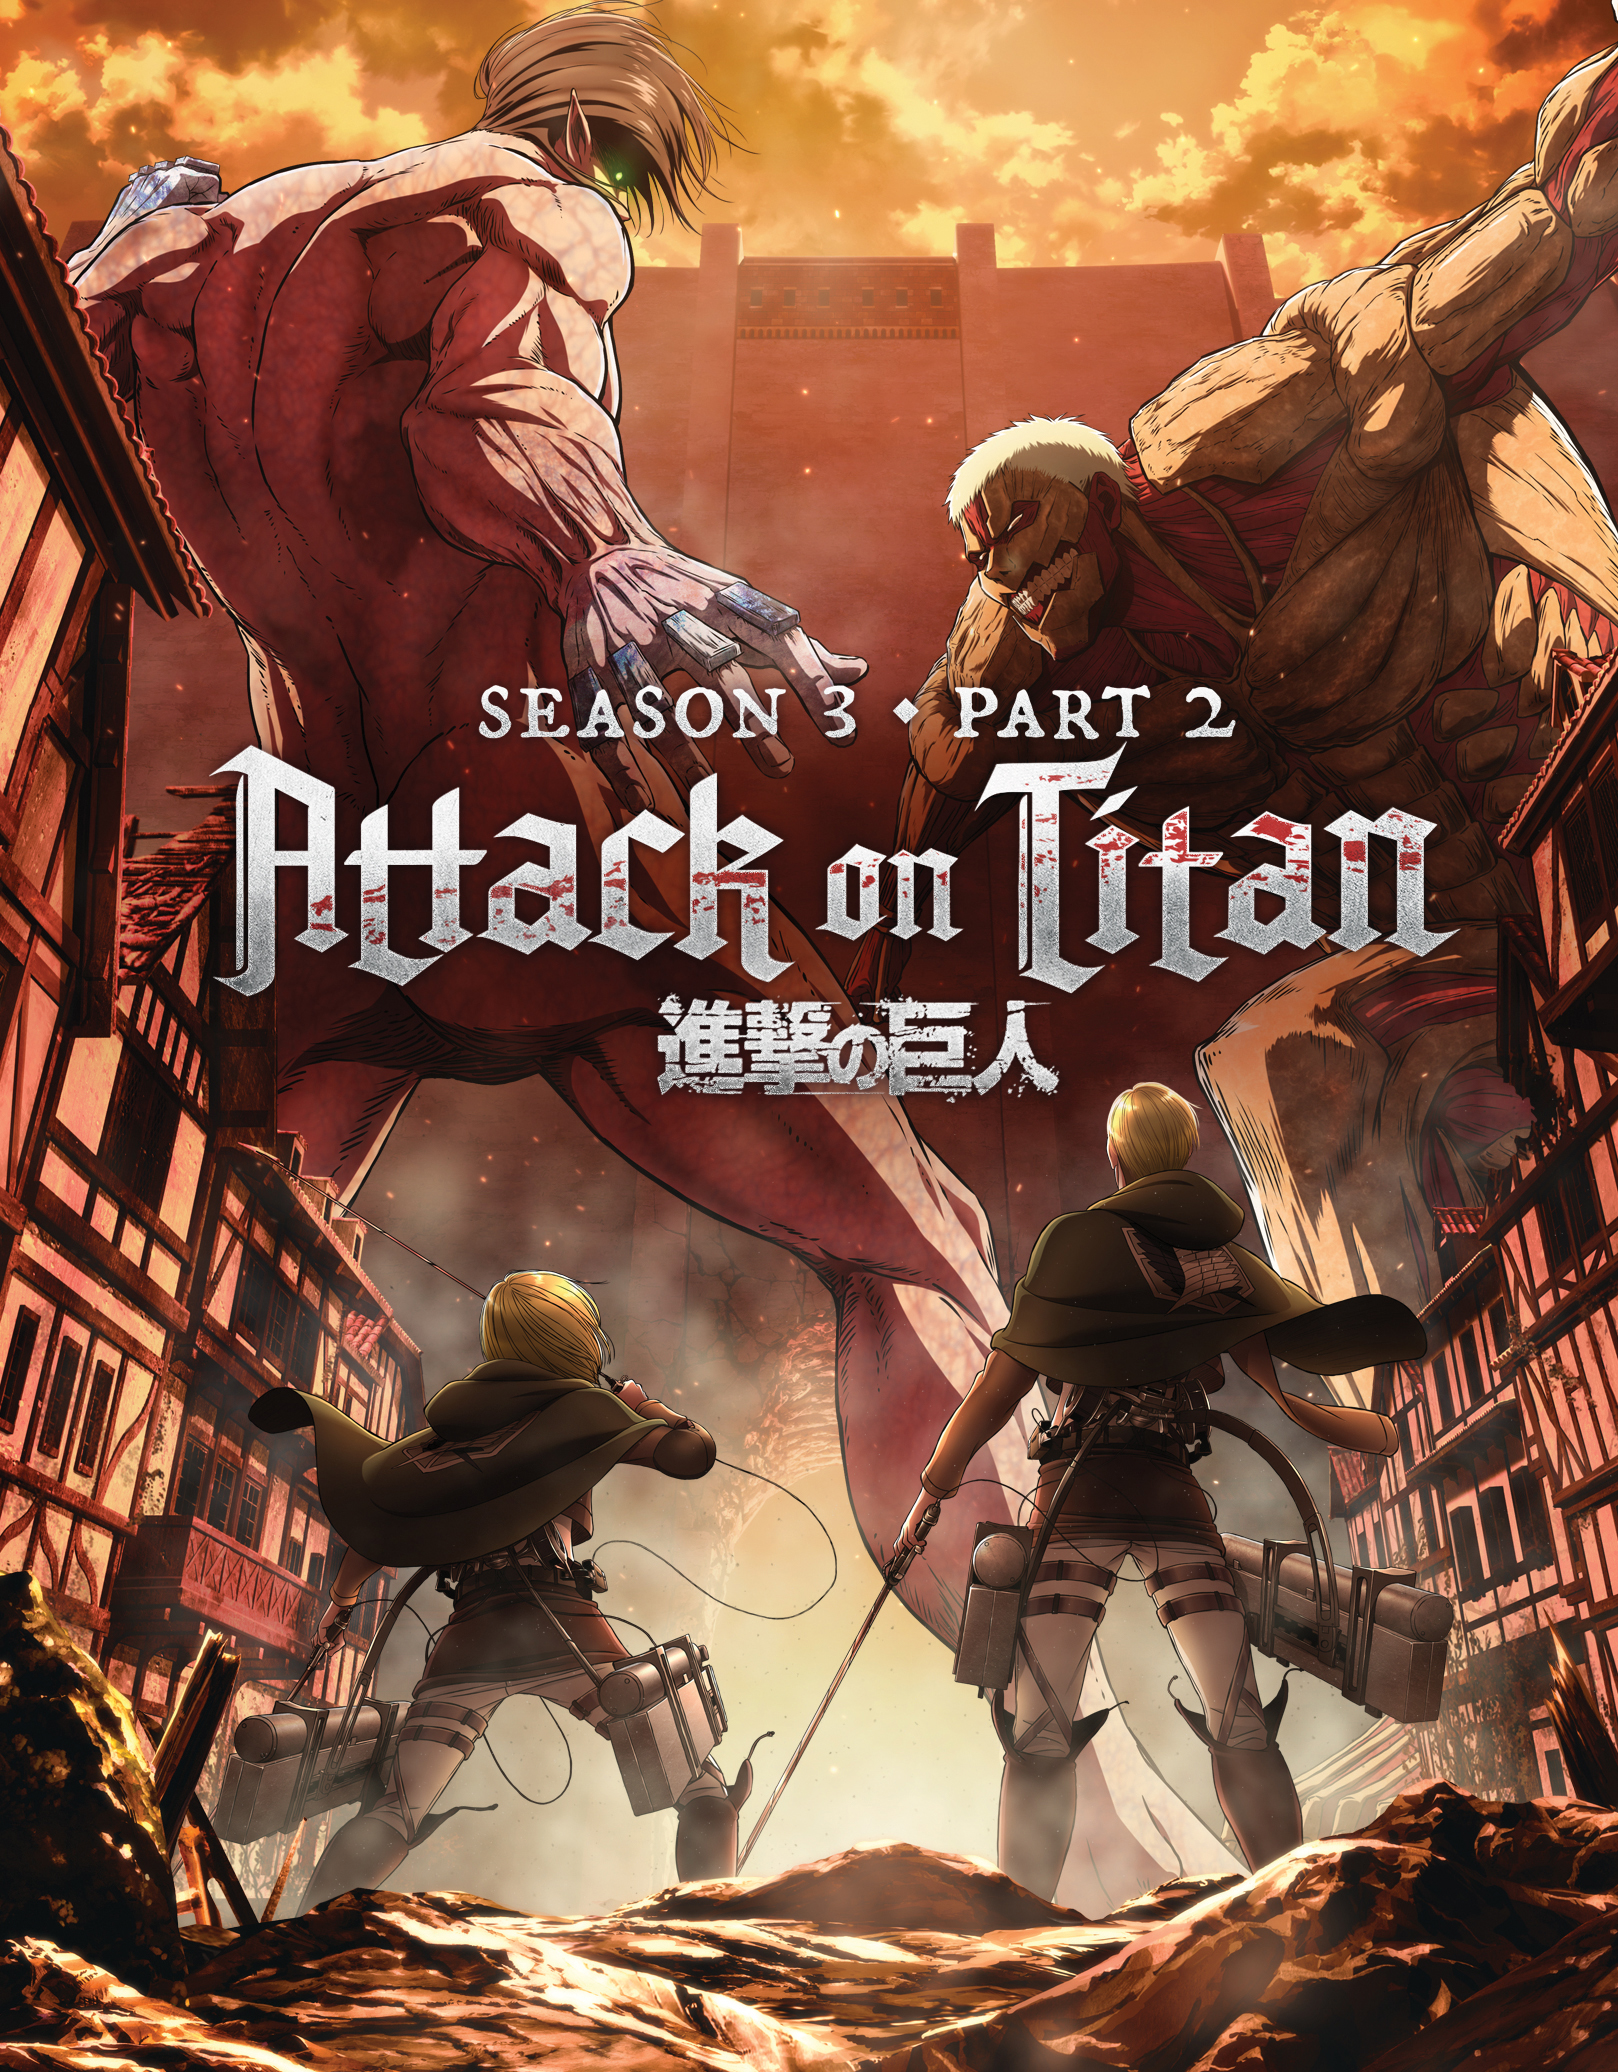 Attack on Titan Season 3 Part 2